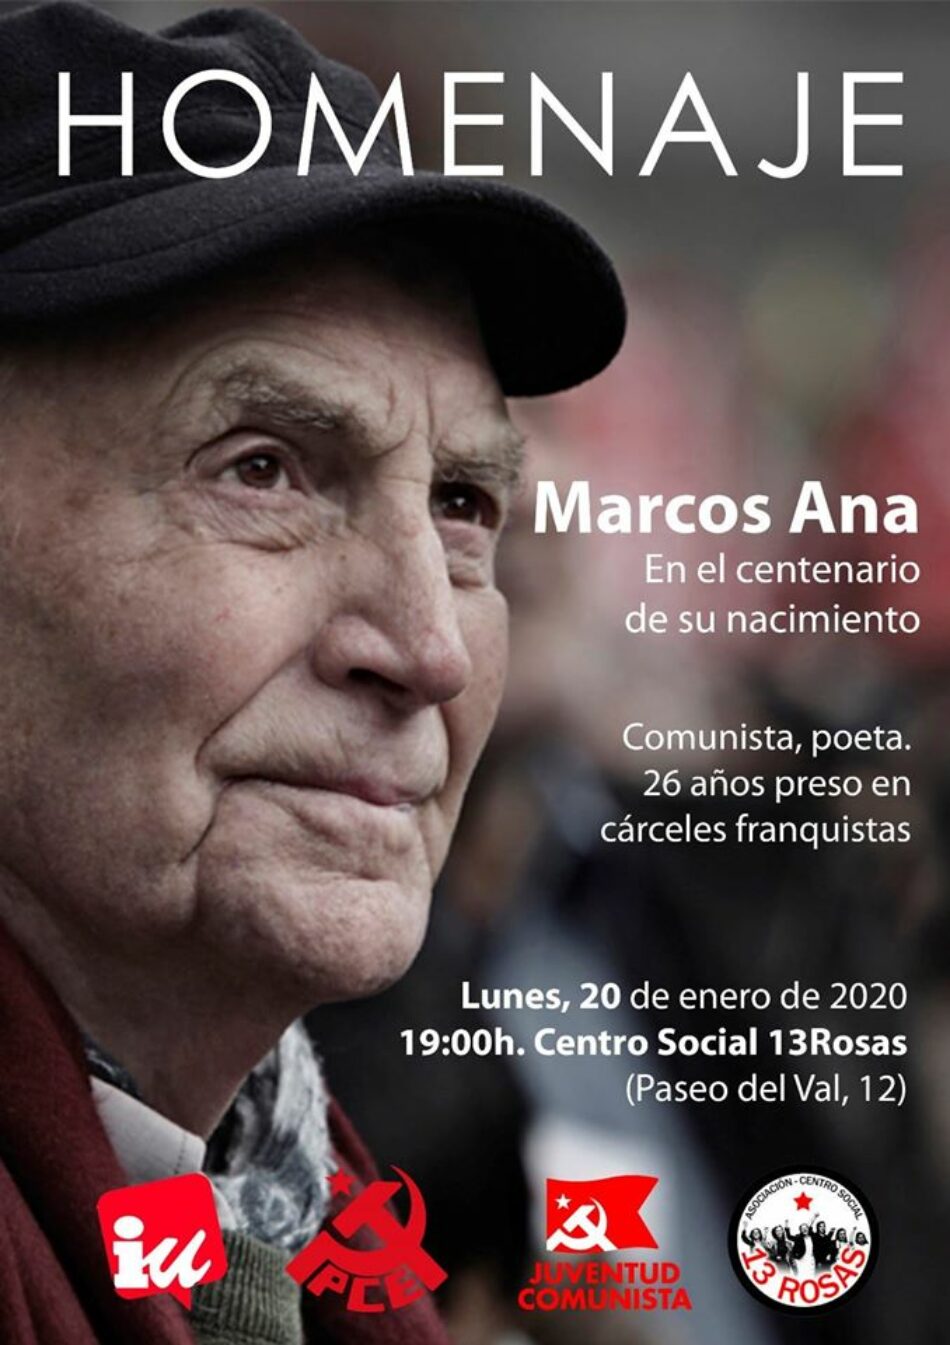 Homenaje cuando se cumplen 100 años del nacimiento del poeta comunista Marcos Ana